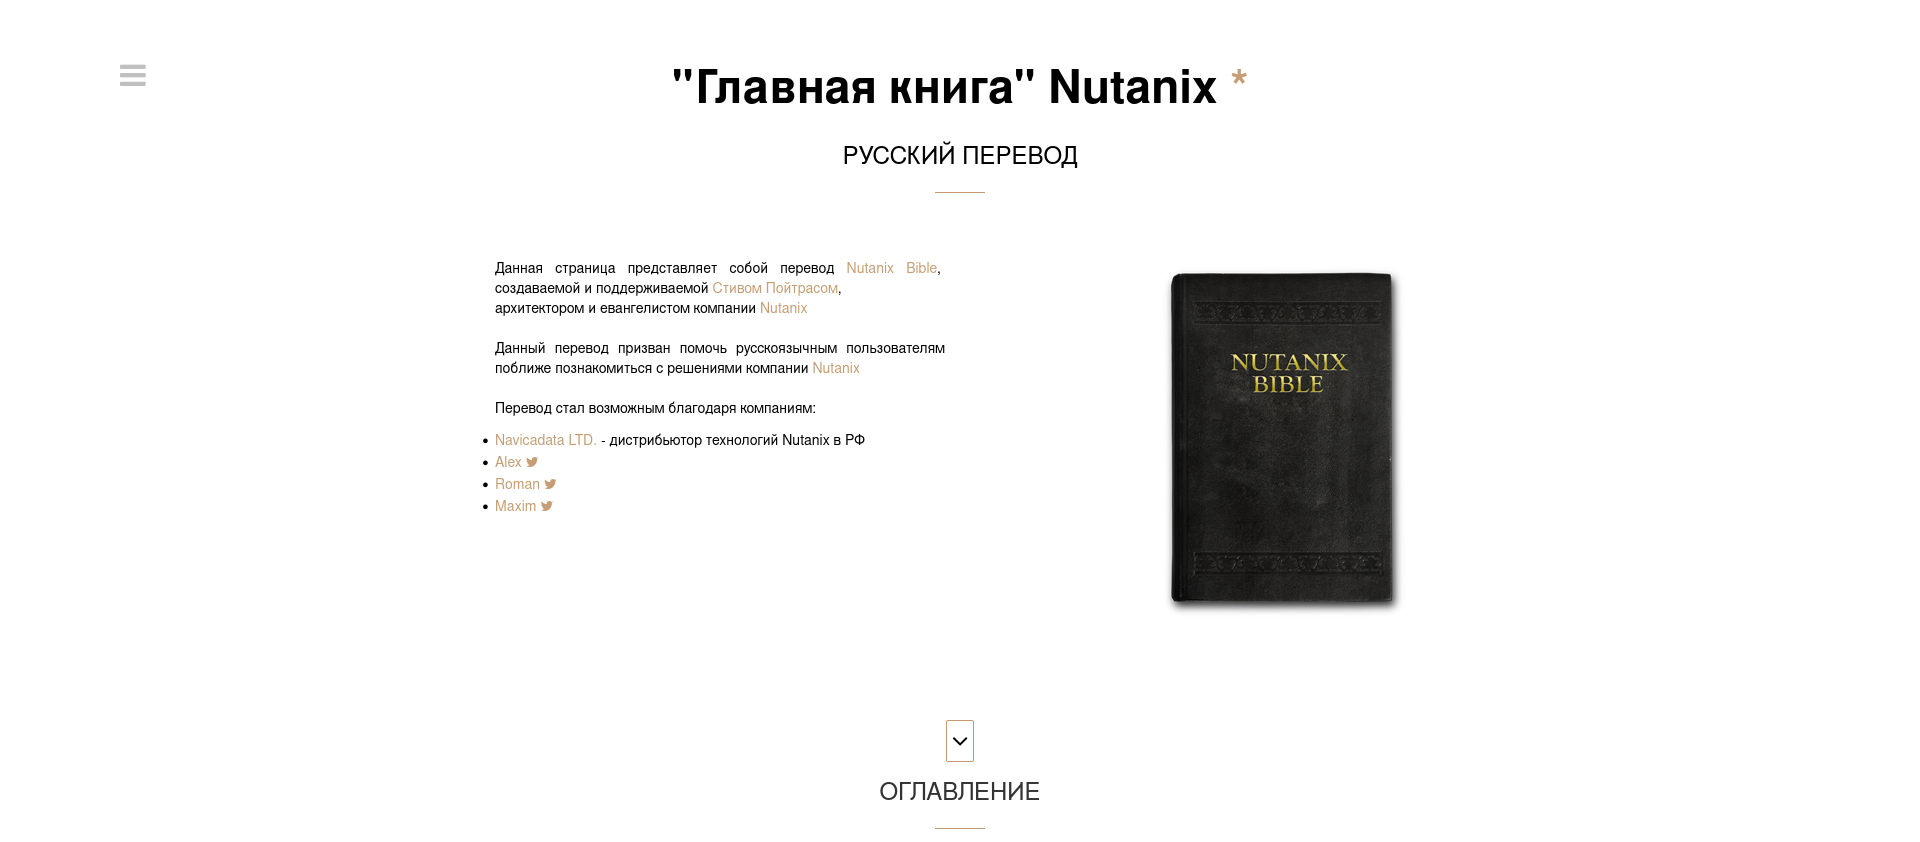 Главная книга Nutanix*